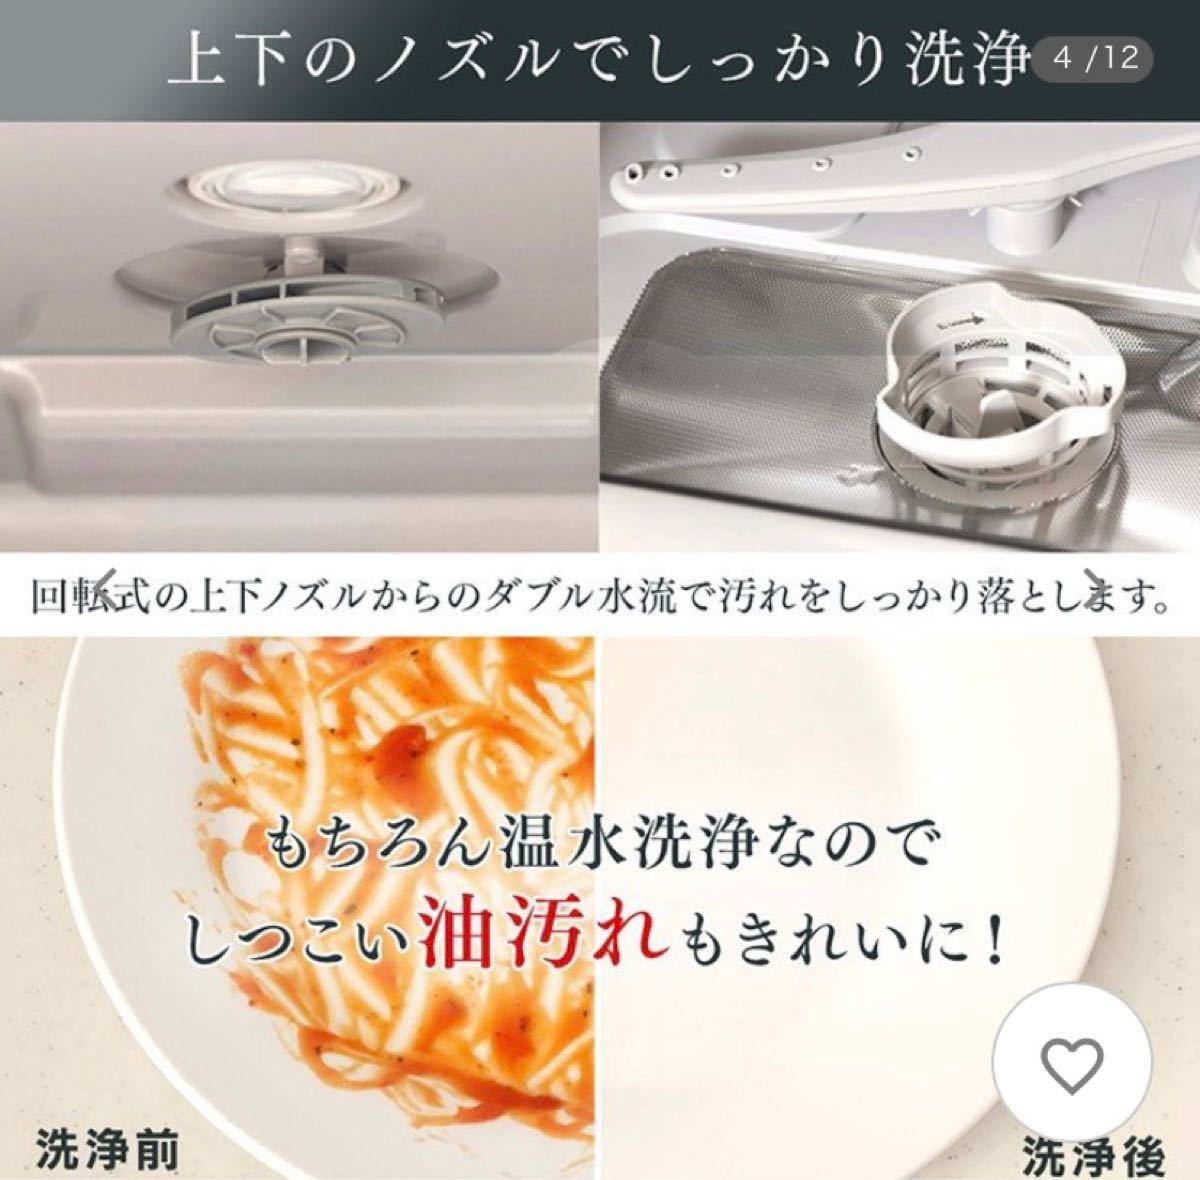 食洗機 工事不要 食器洗い乾燥機 アイリスオーヤマ コンパクト 3人 食洗器 据え置き型 ISHT-5000-W 食器乾燥機